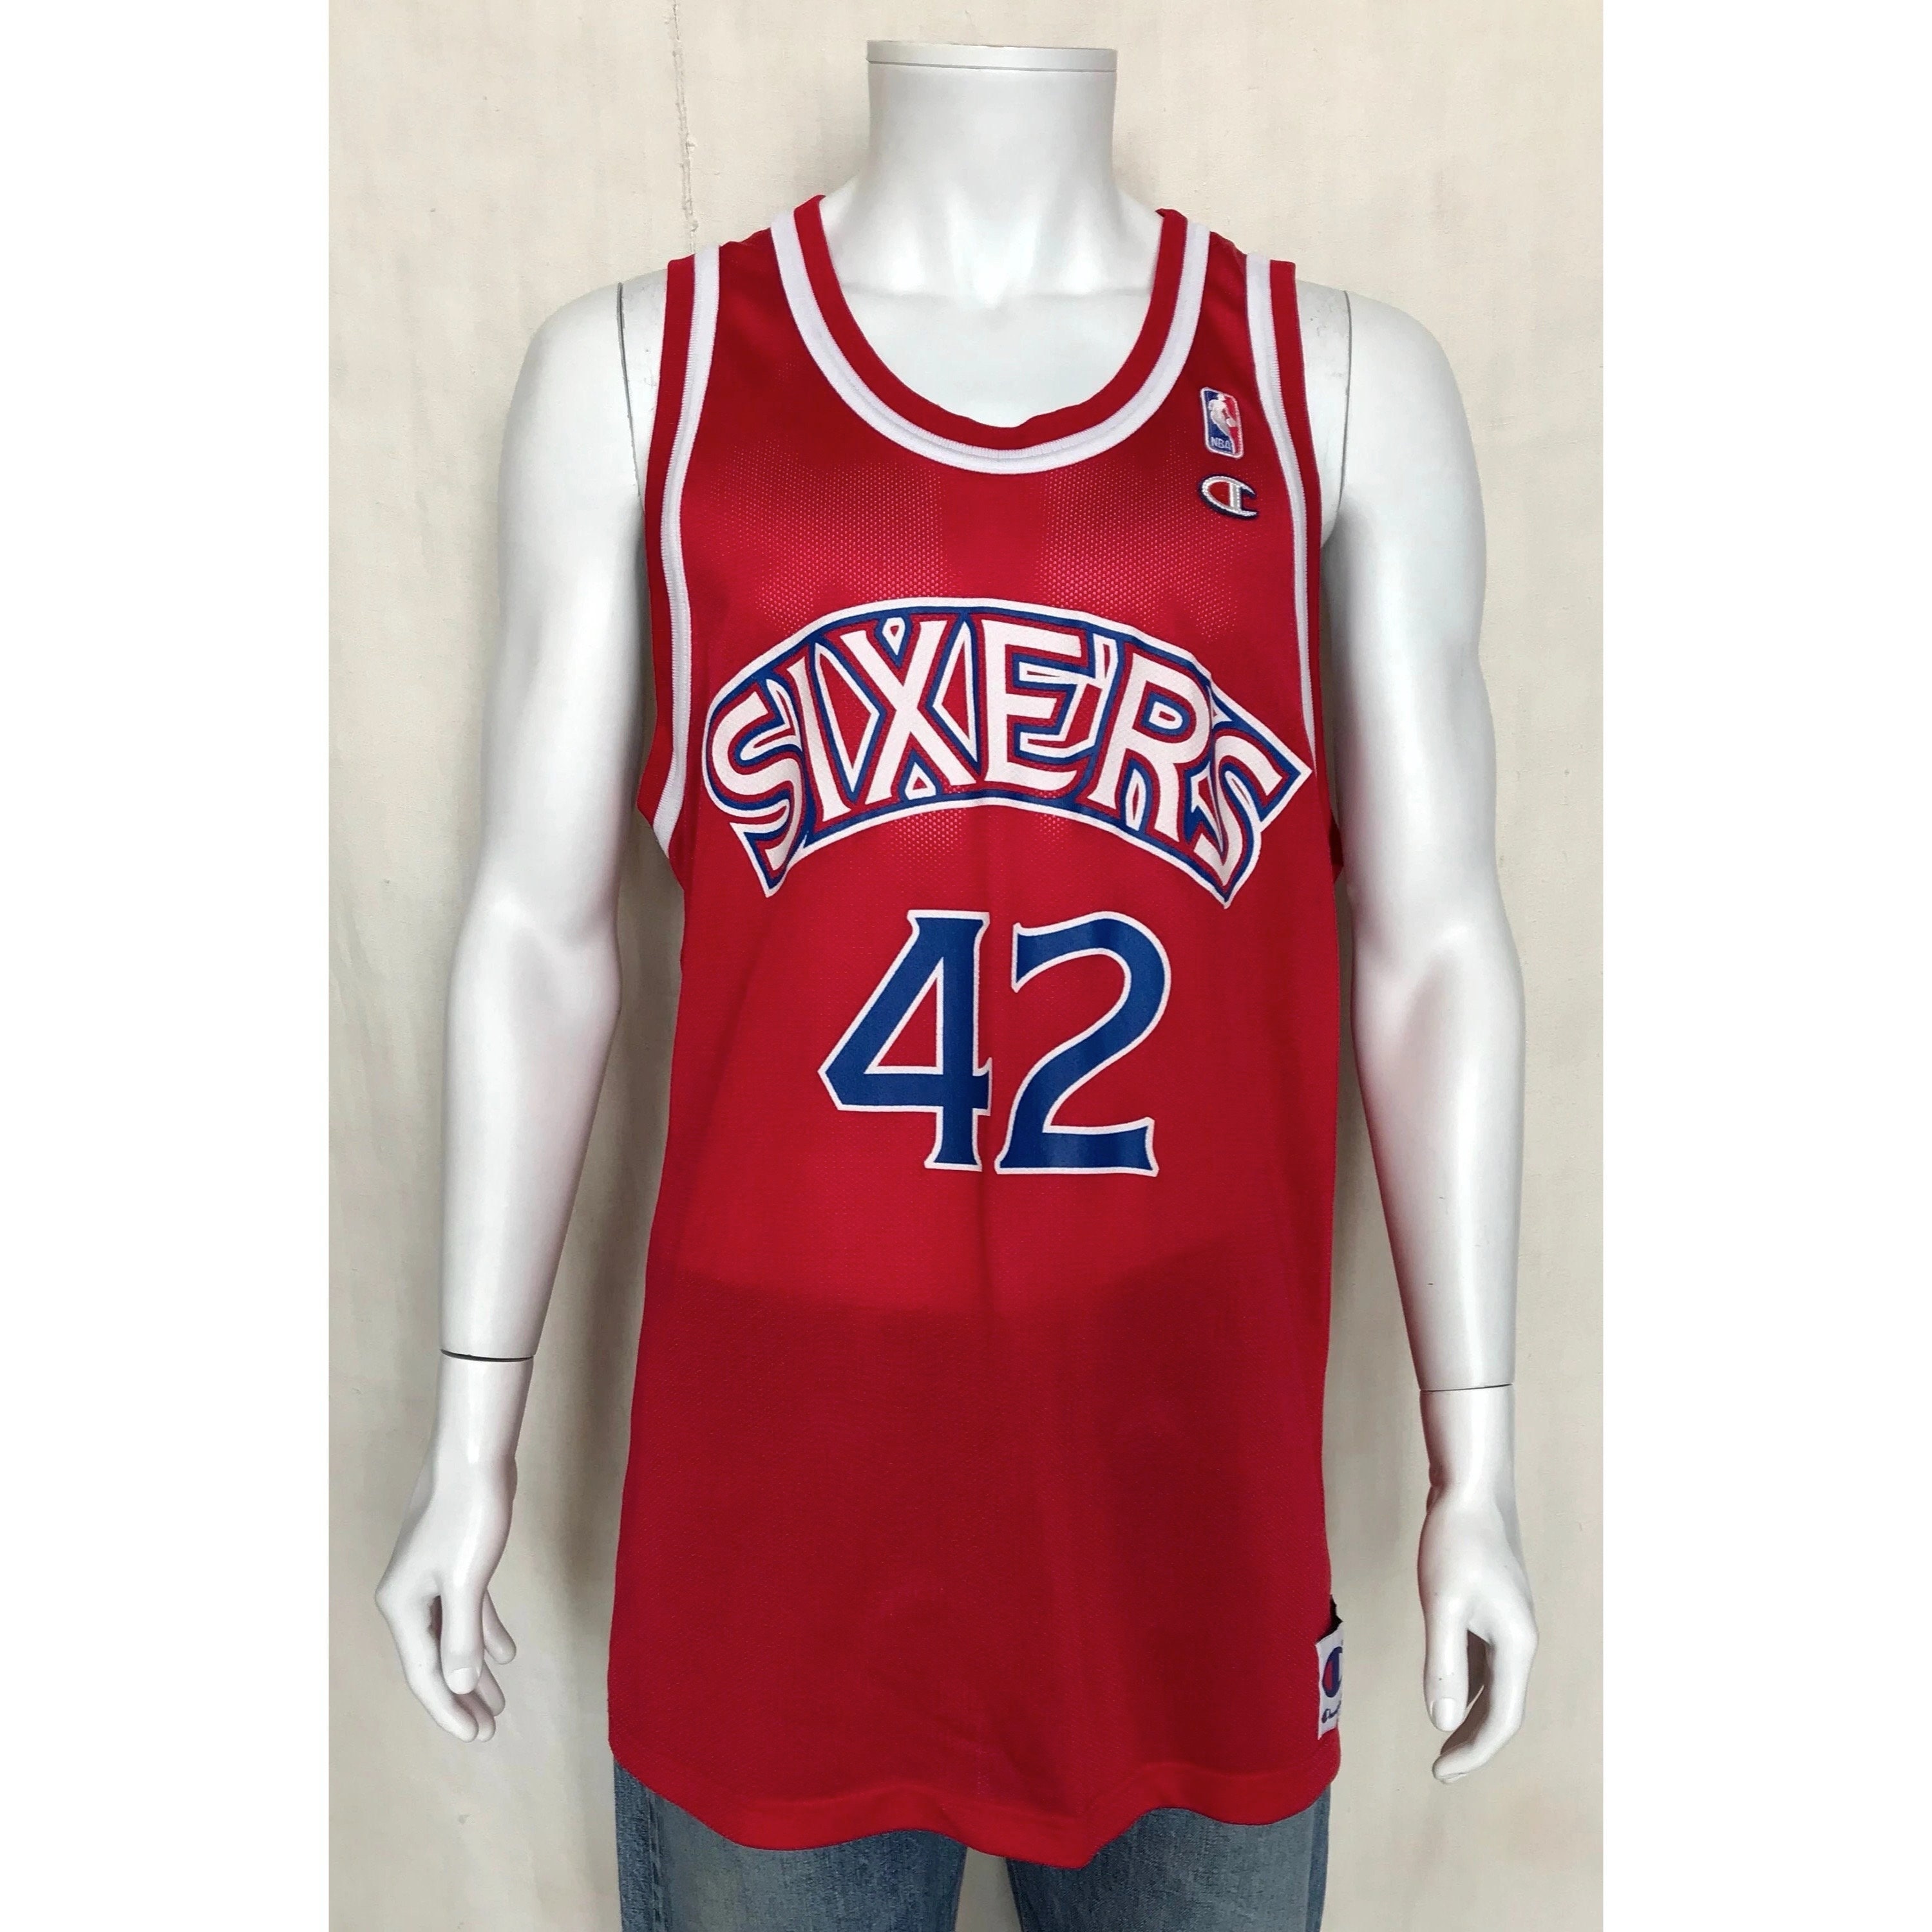 Mitchell & Ness NBA Swingman Jersey Philadelphia 76ers Home 1996-97 Allen Iverson #3 Jerseys & Team Gear White in size:L-14/16